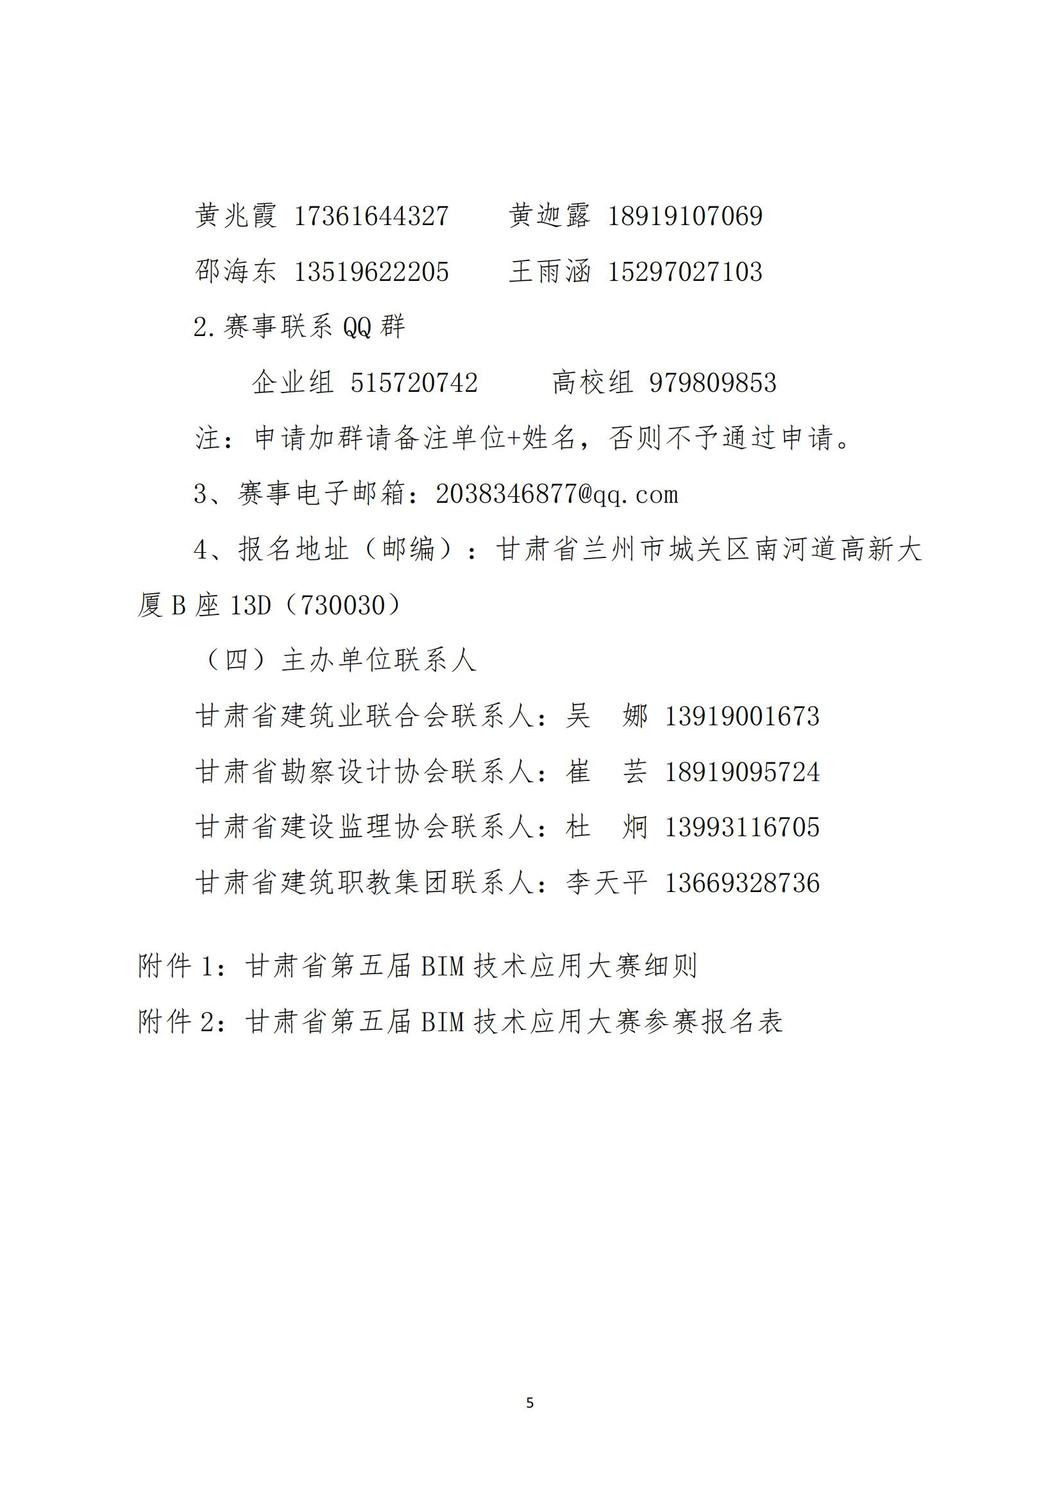 关于举办甘肃省第五届BIM技术应用大赛的通知_04.jpg